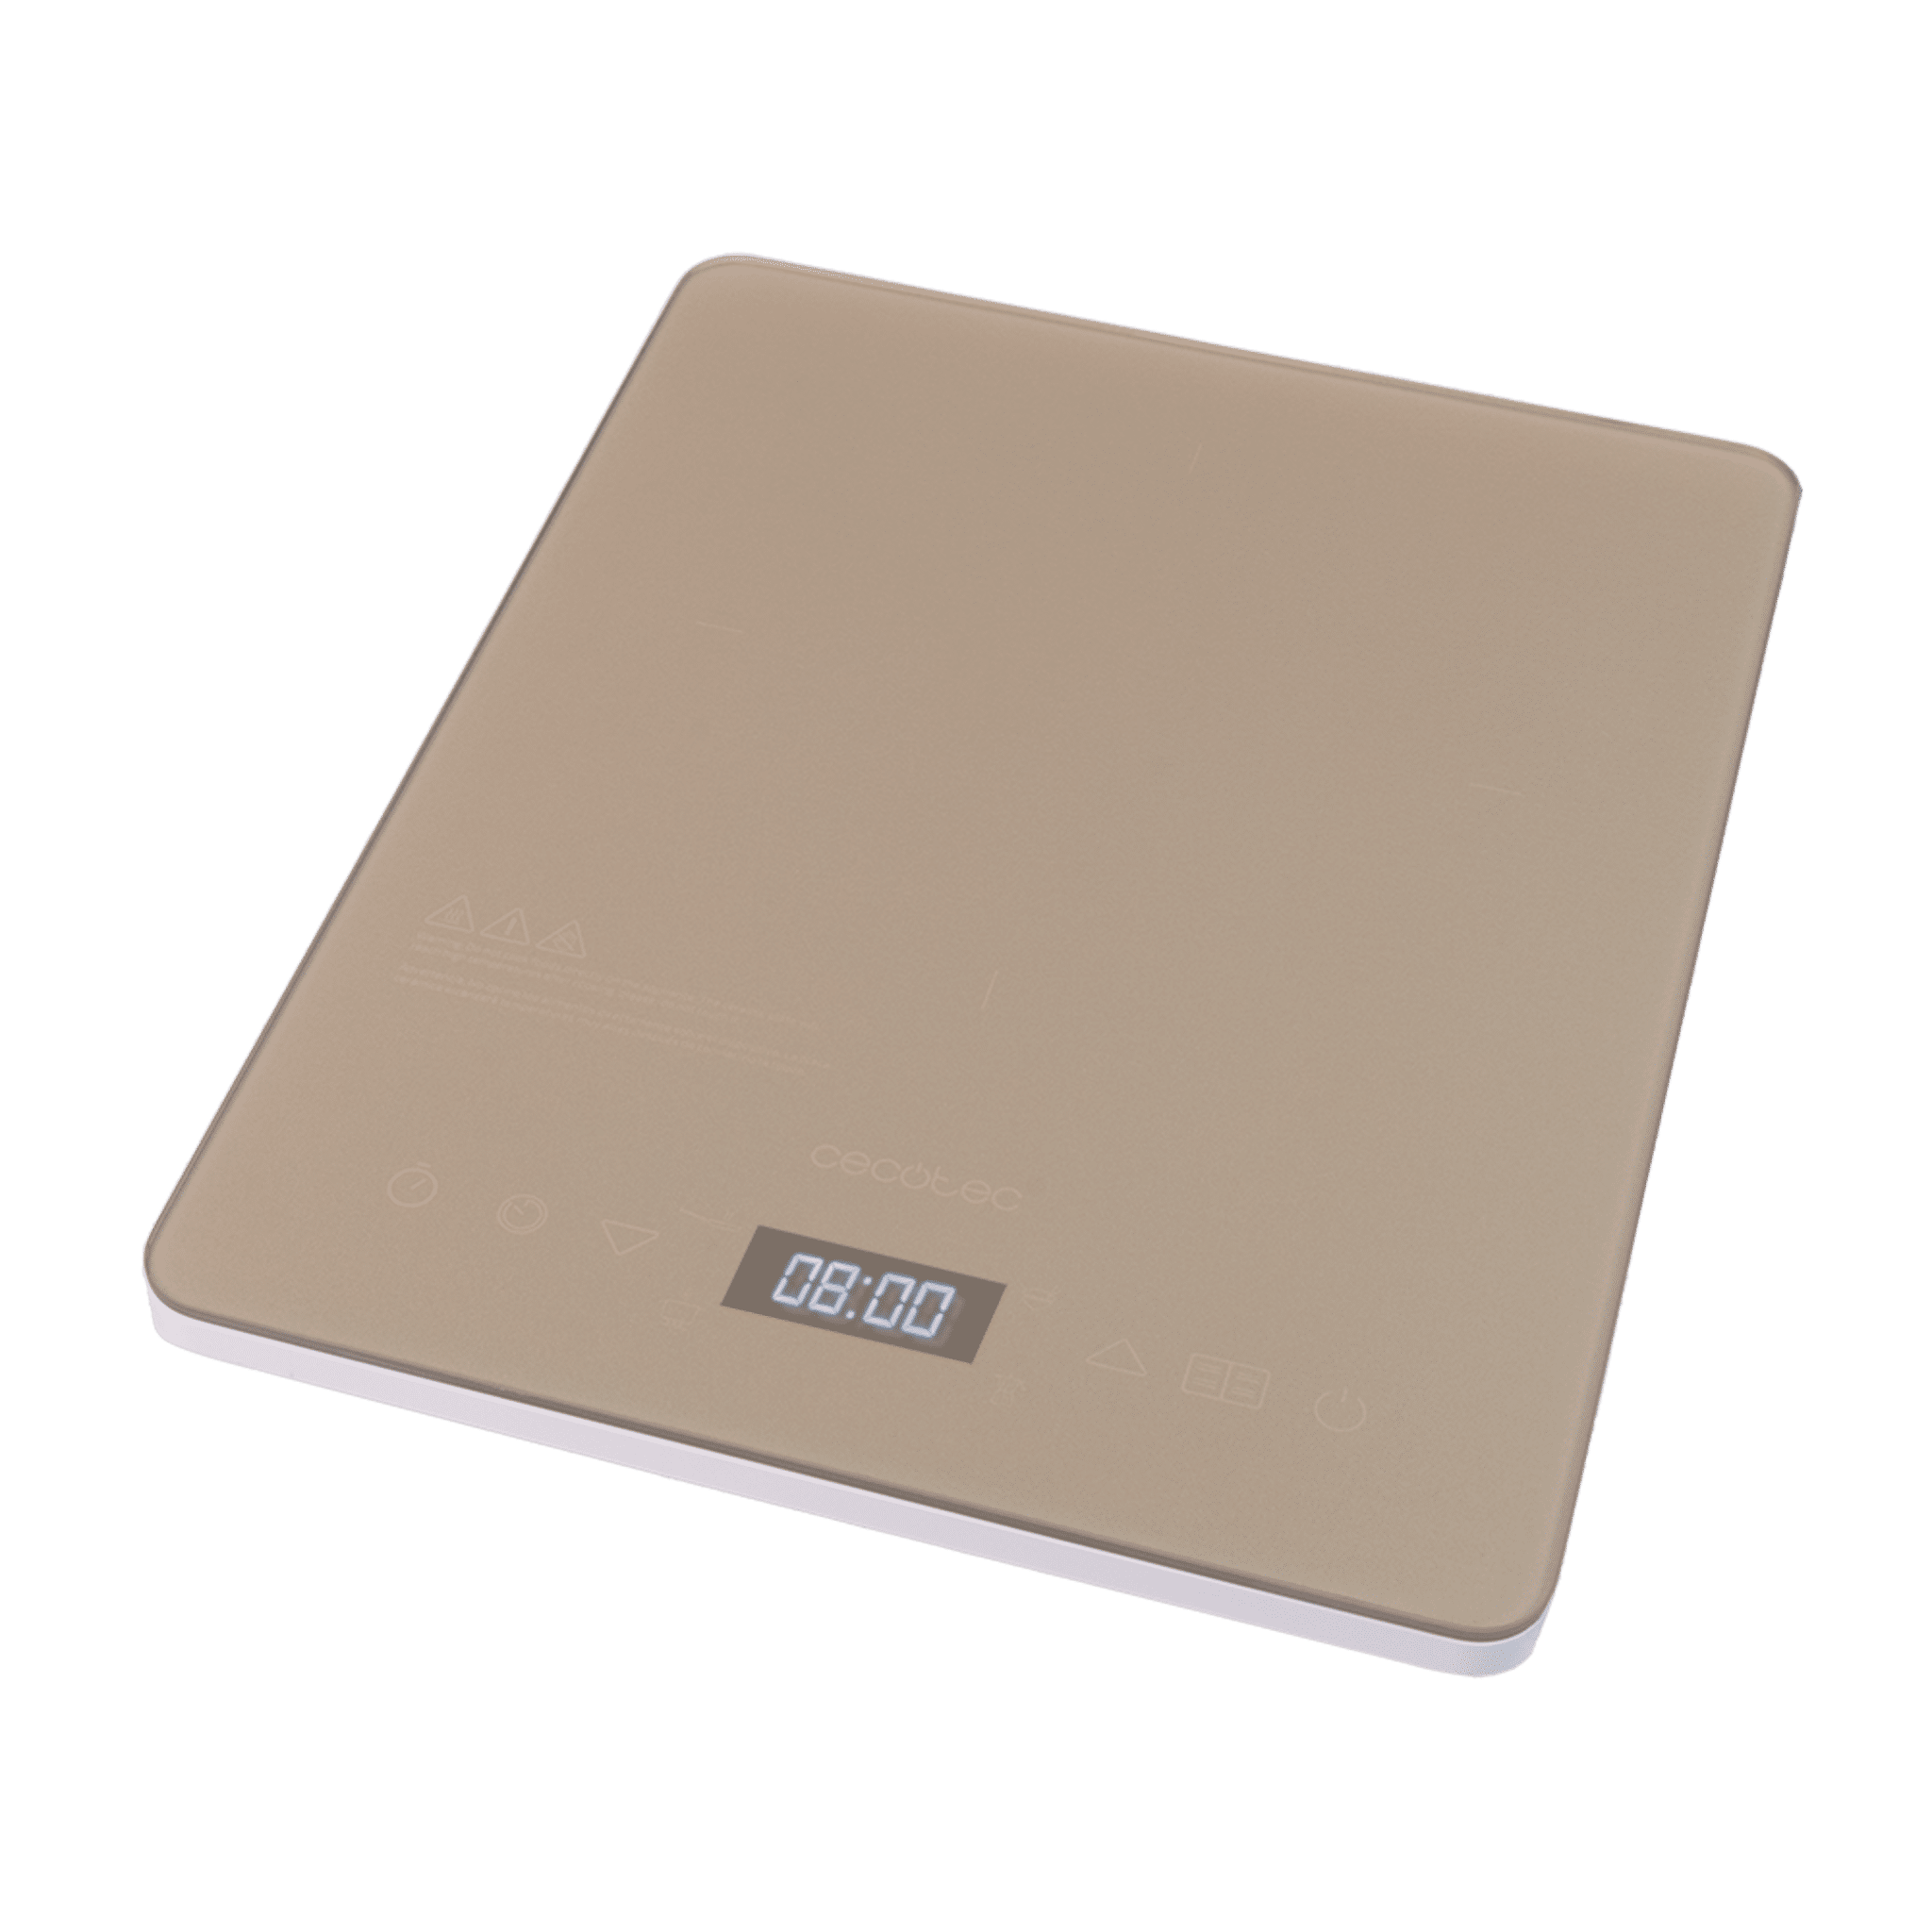 Tragbare Induktionsplatte Full Crystal Diamond Leistung 2000 W, einstellbare Temperatur, 4 voreingestellte Programme, Timer, Bratpfannen bis zu 28 cm